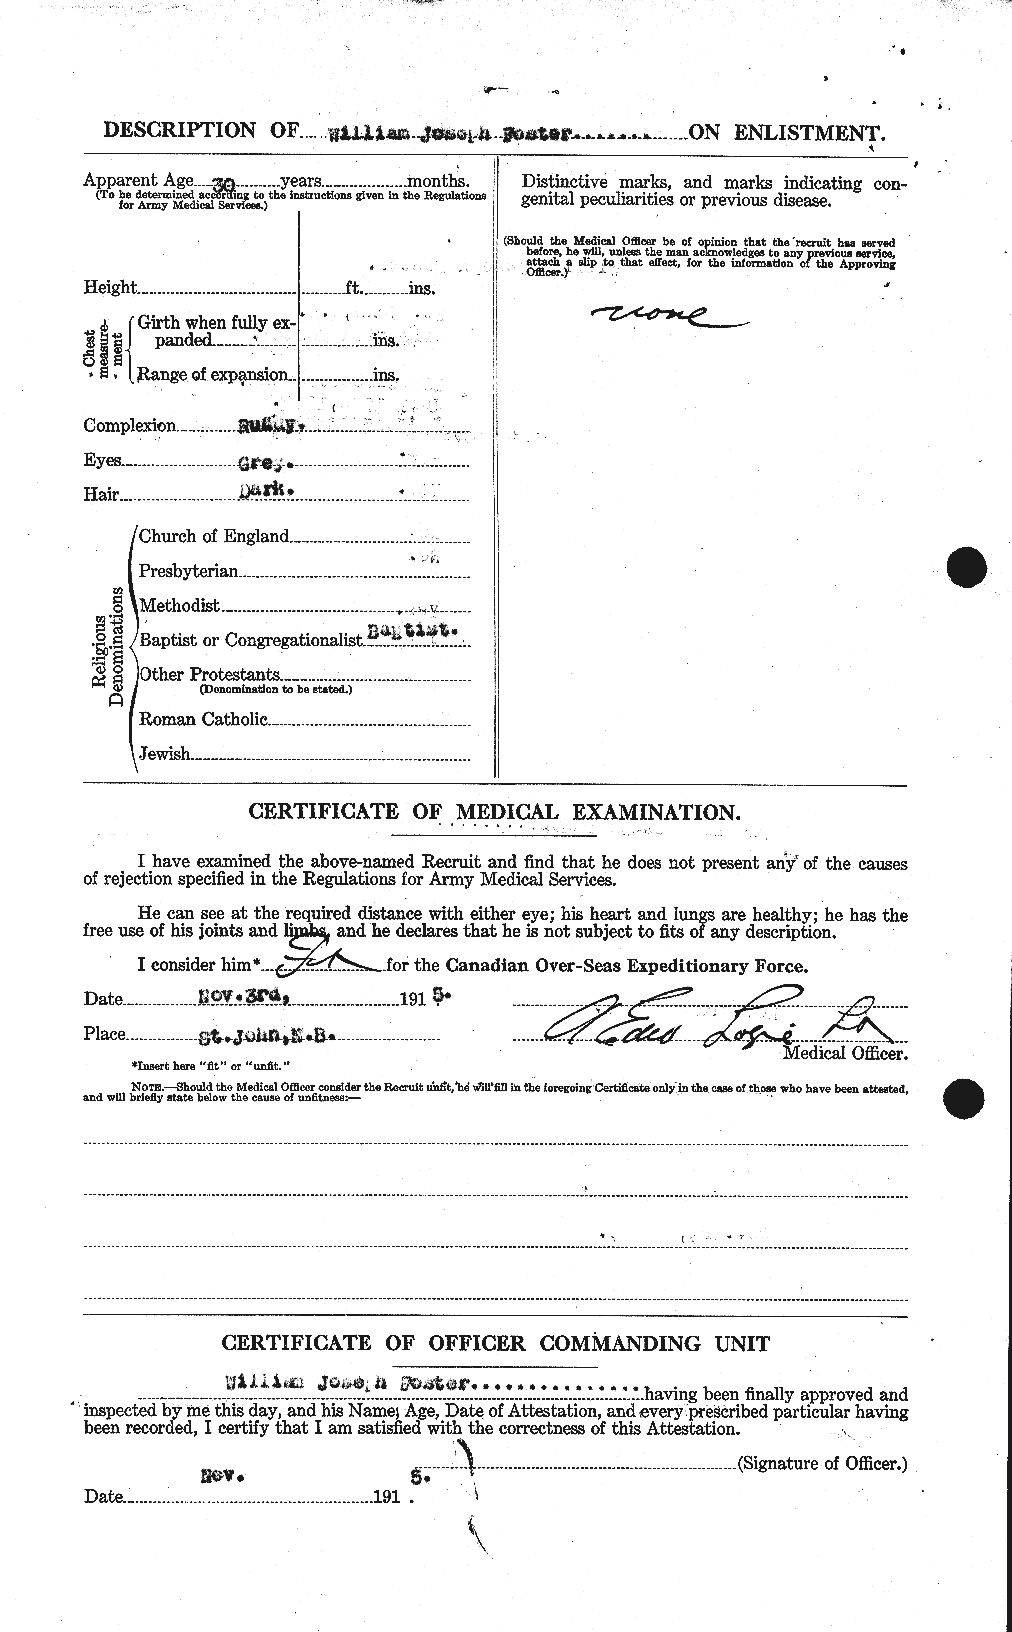 Dossiers du Personnel de la Première Guerre mondiale - CEC 328765b